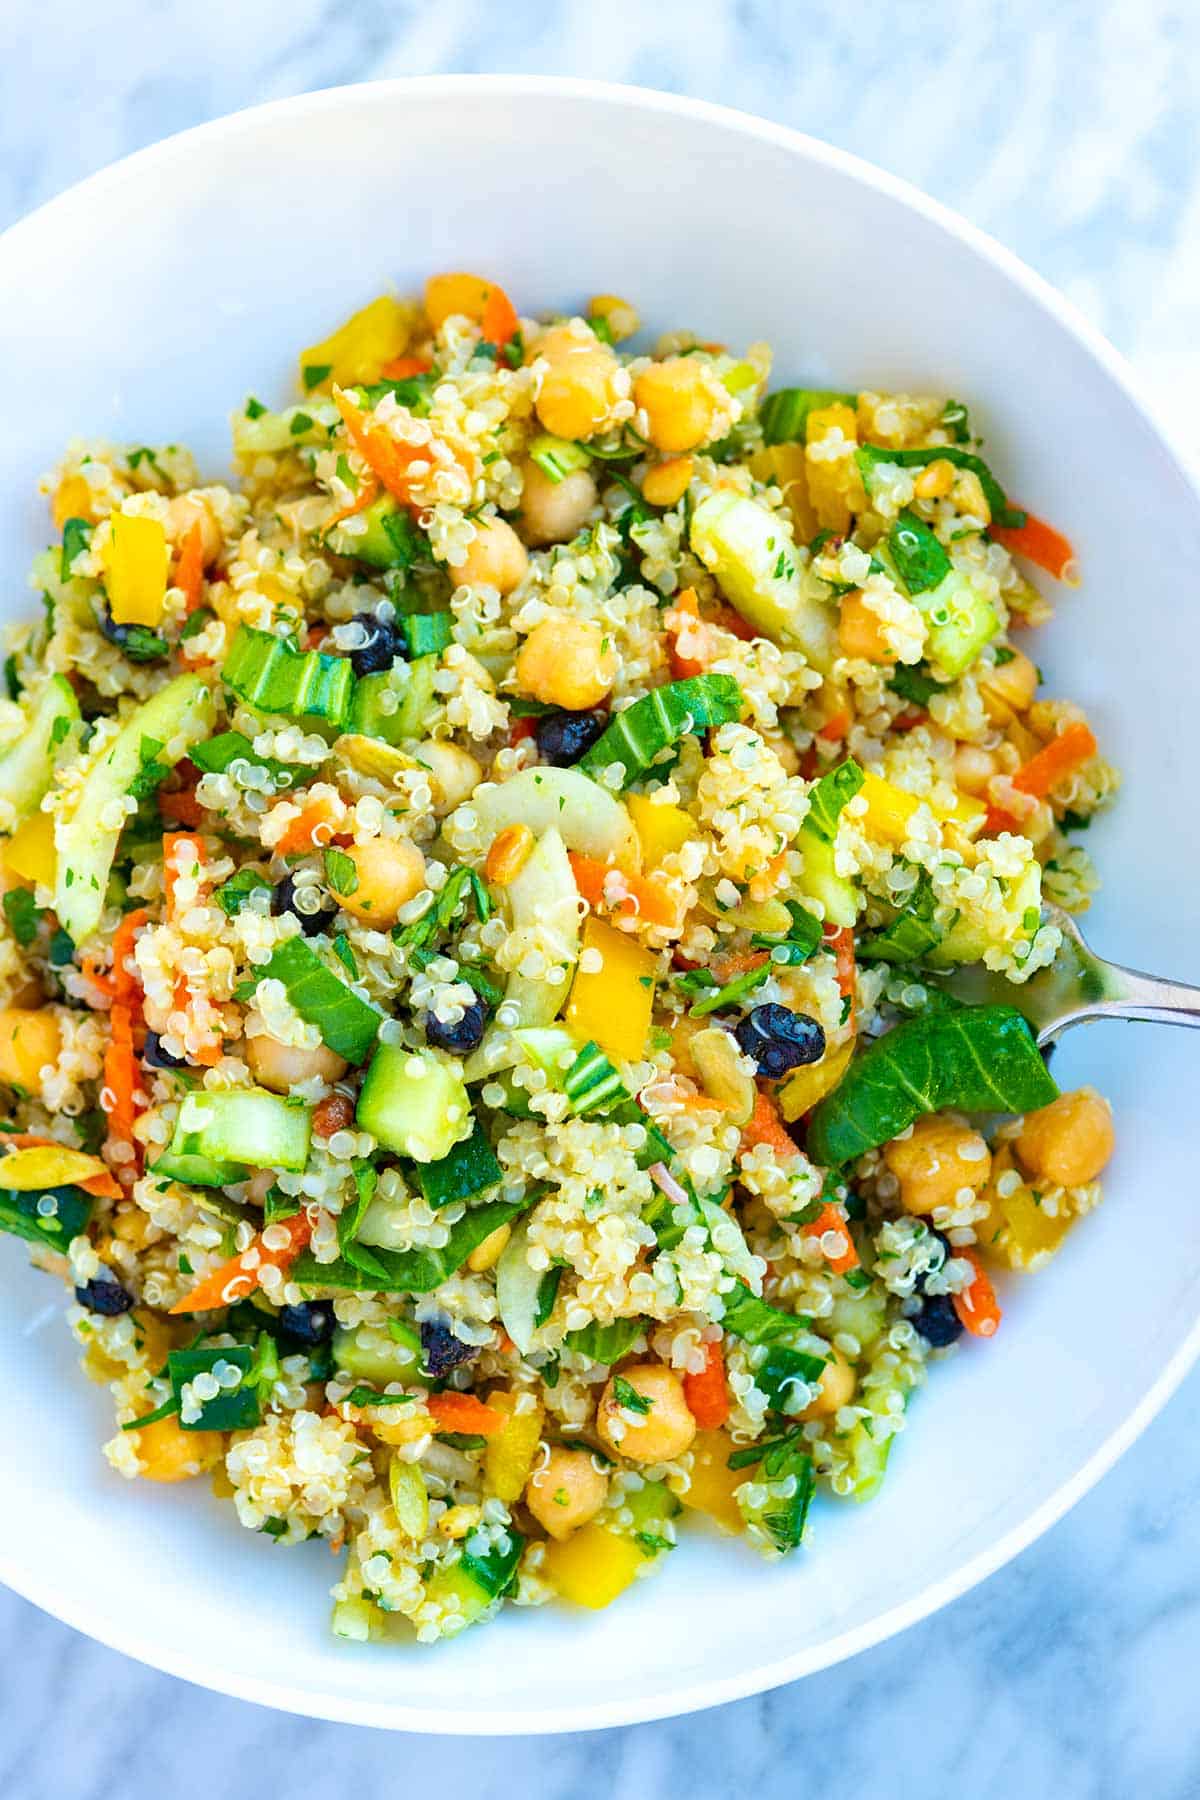 Salade de quinoa saine avec légumes, fruits secs et pois chiches